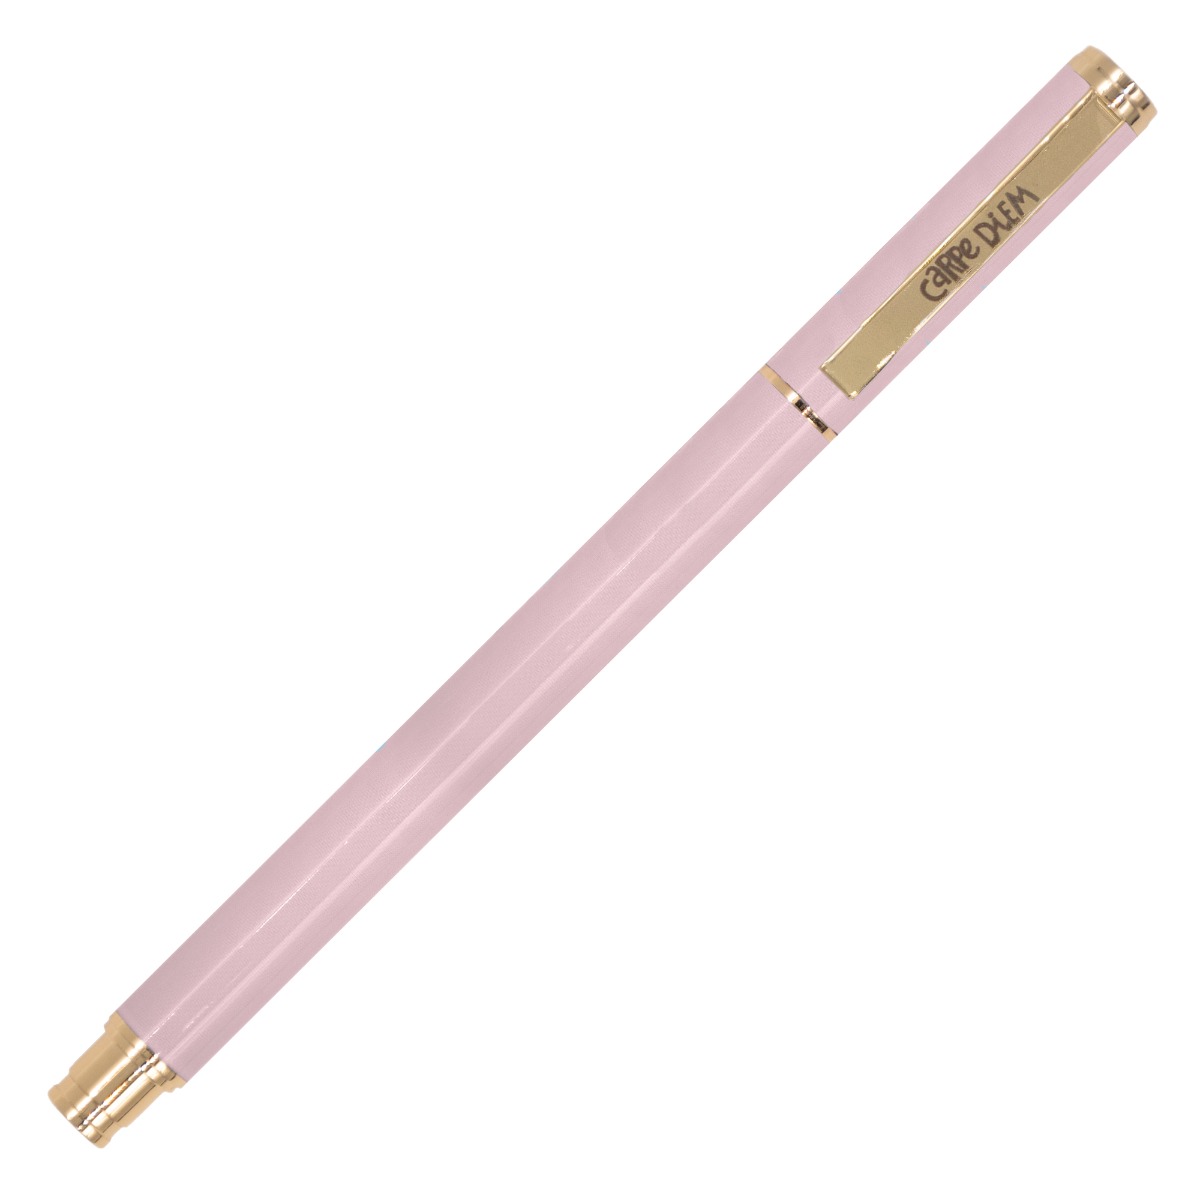 Slim Pencil Case(Pink)